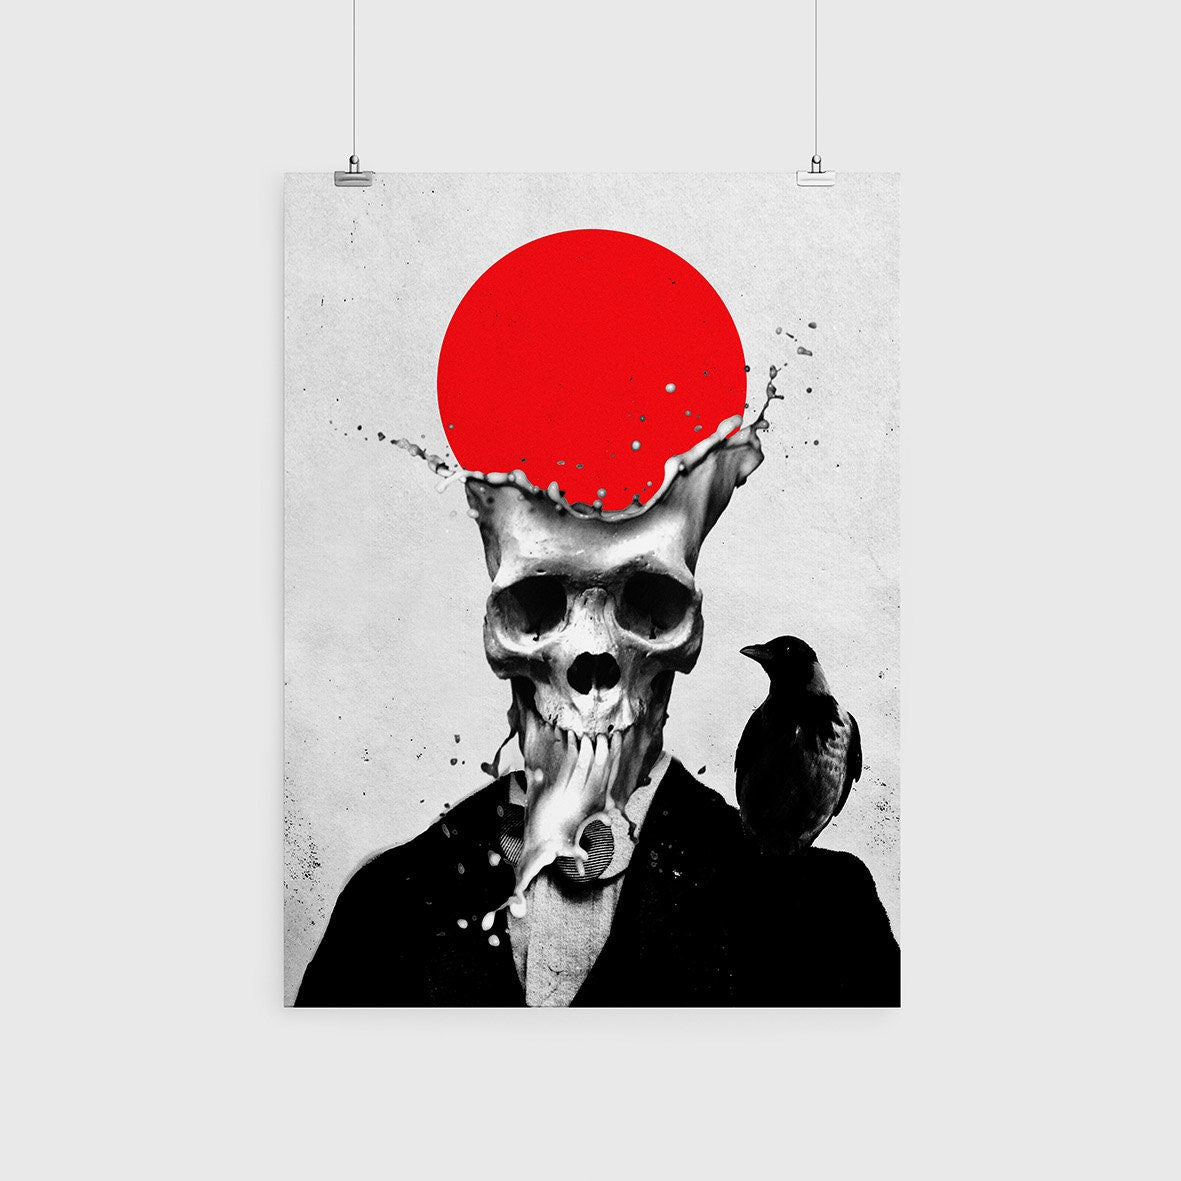 Splash Skull Poster, Sugar Skull Print Wall Art, Gothic Skull Home Decor, Skull Art Print Gift, Abstract Skull Art Illustration By Ali Gulec